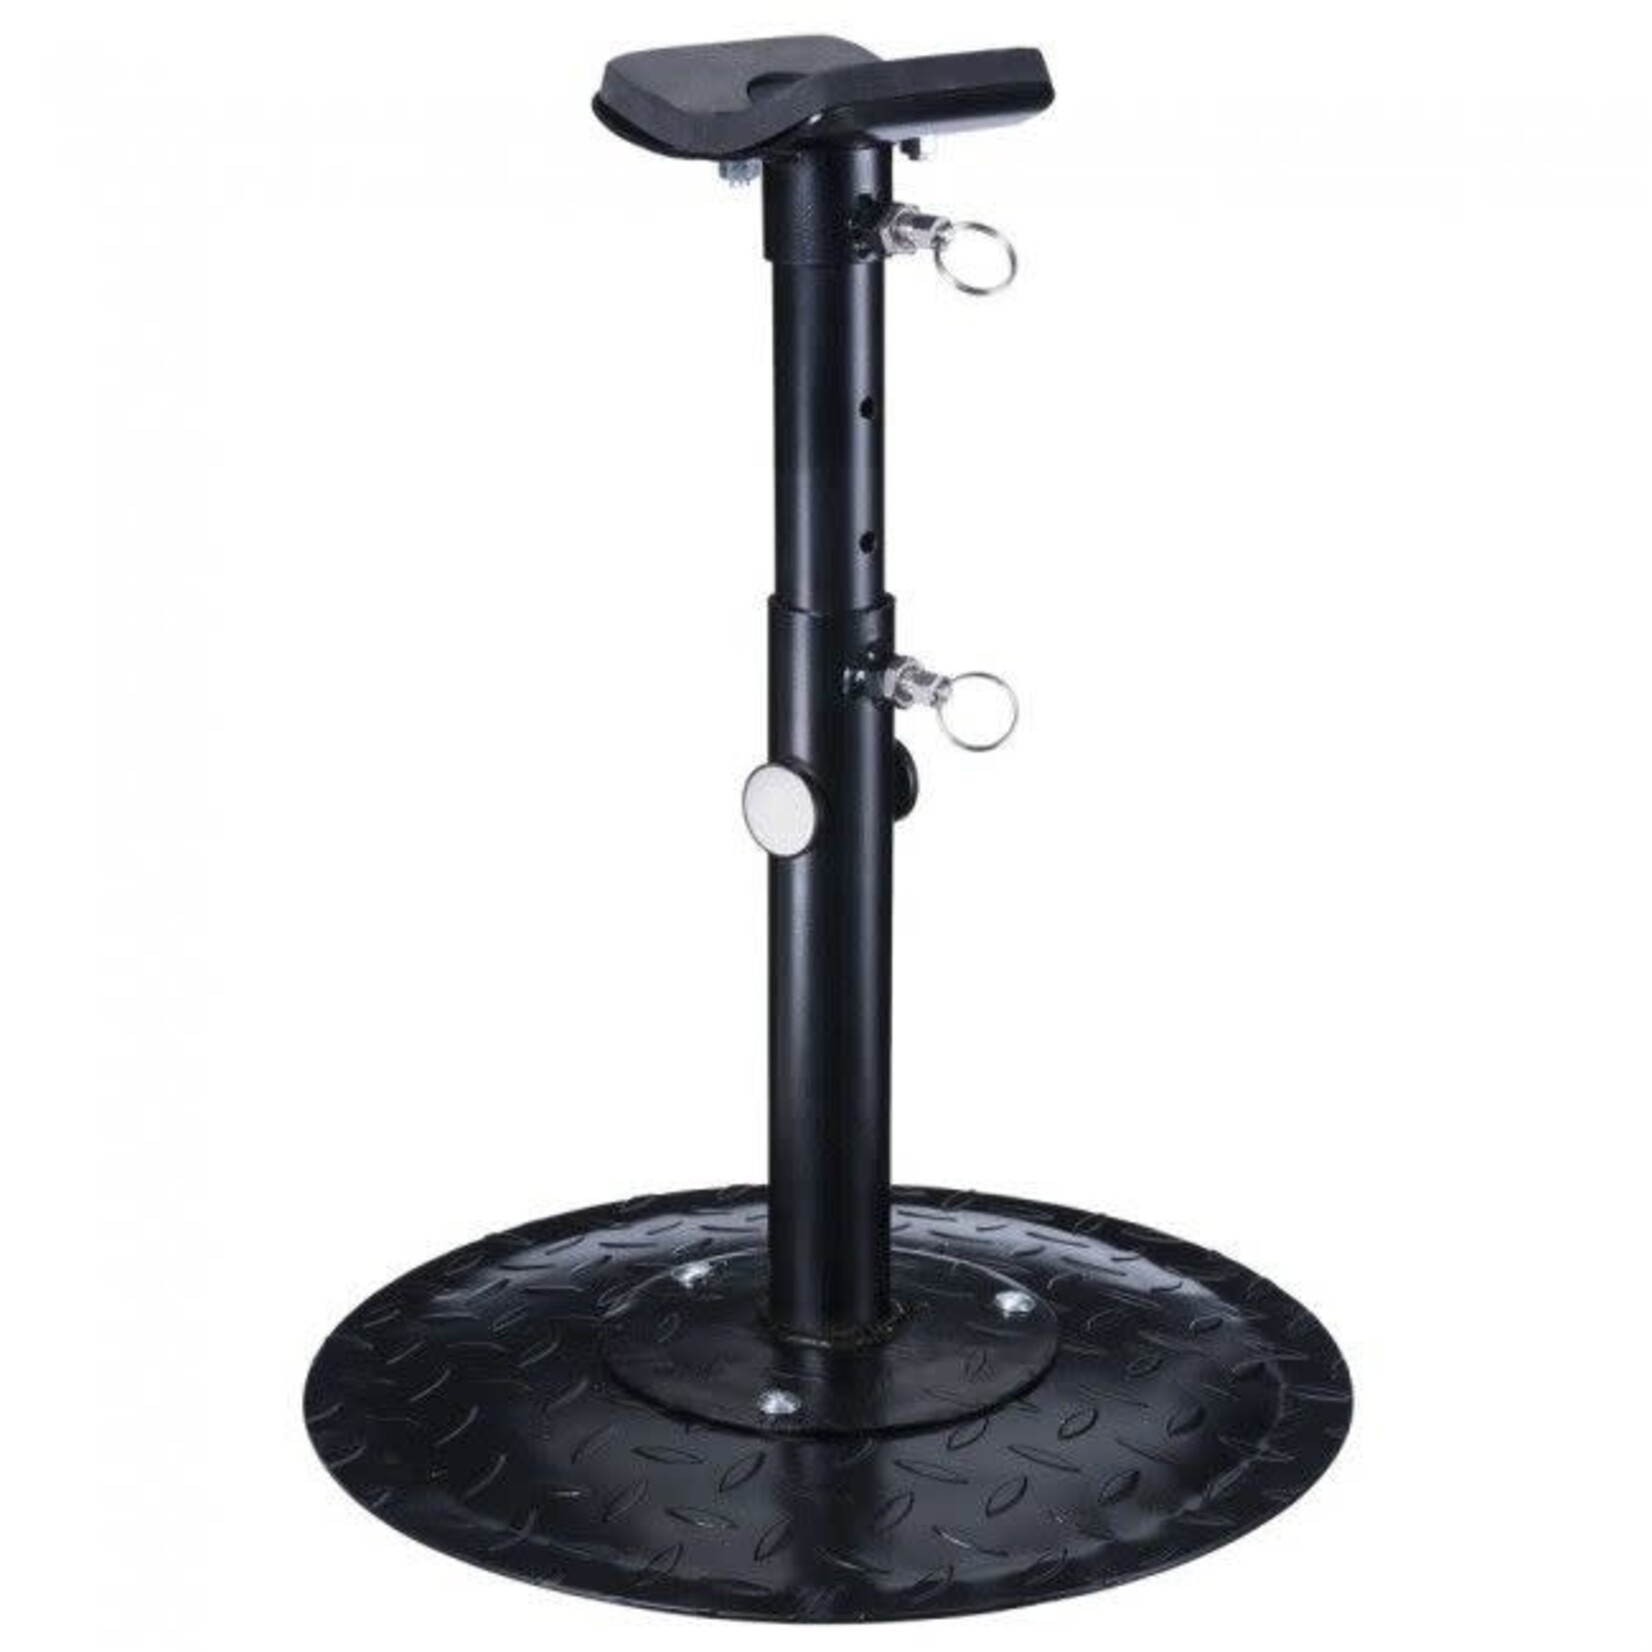 Ger-Ryan Black Adjustable Farrier Stand